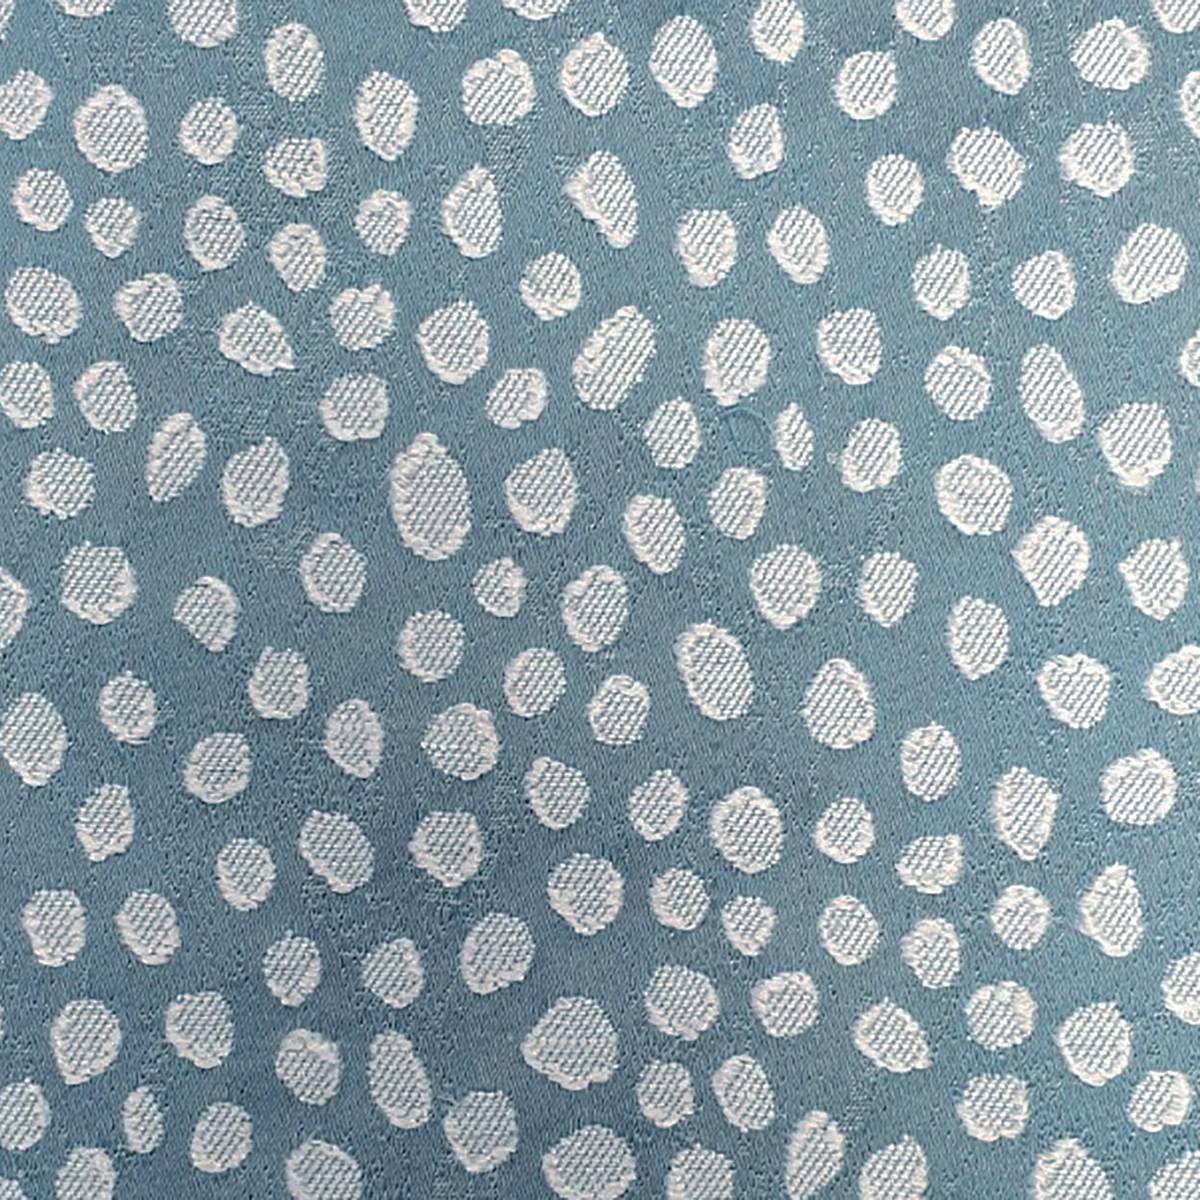 Furley Sky Fabric by Ashley Wilde